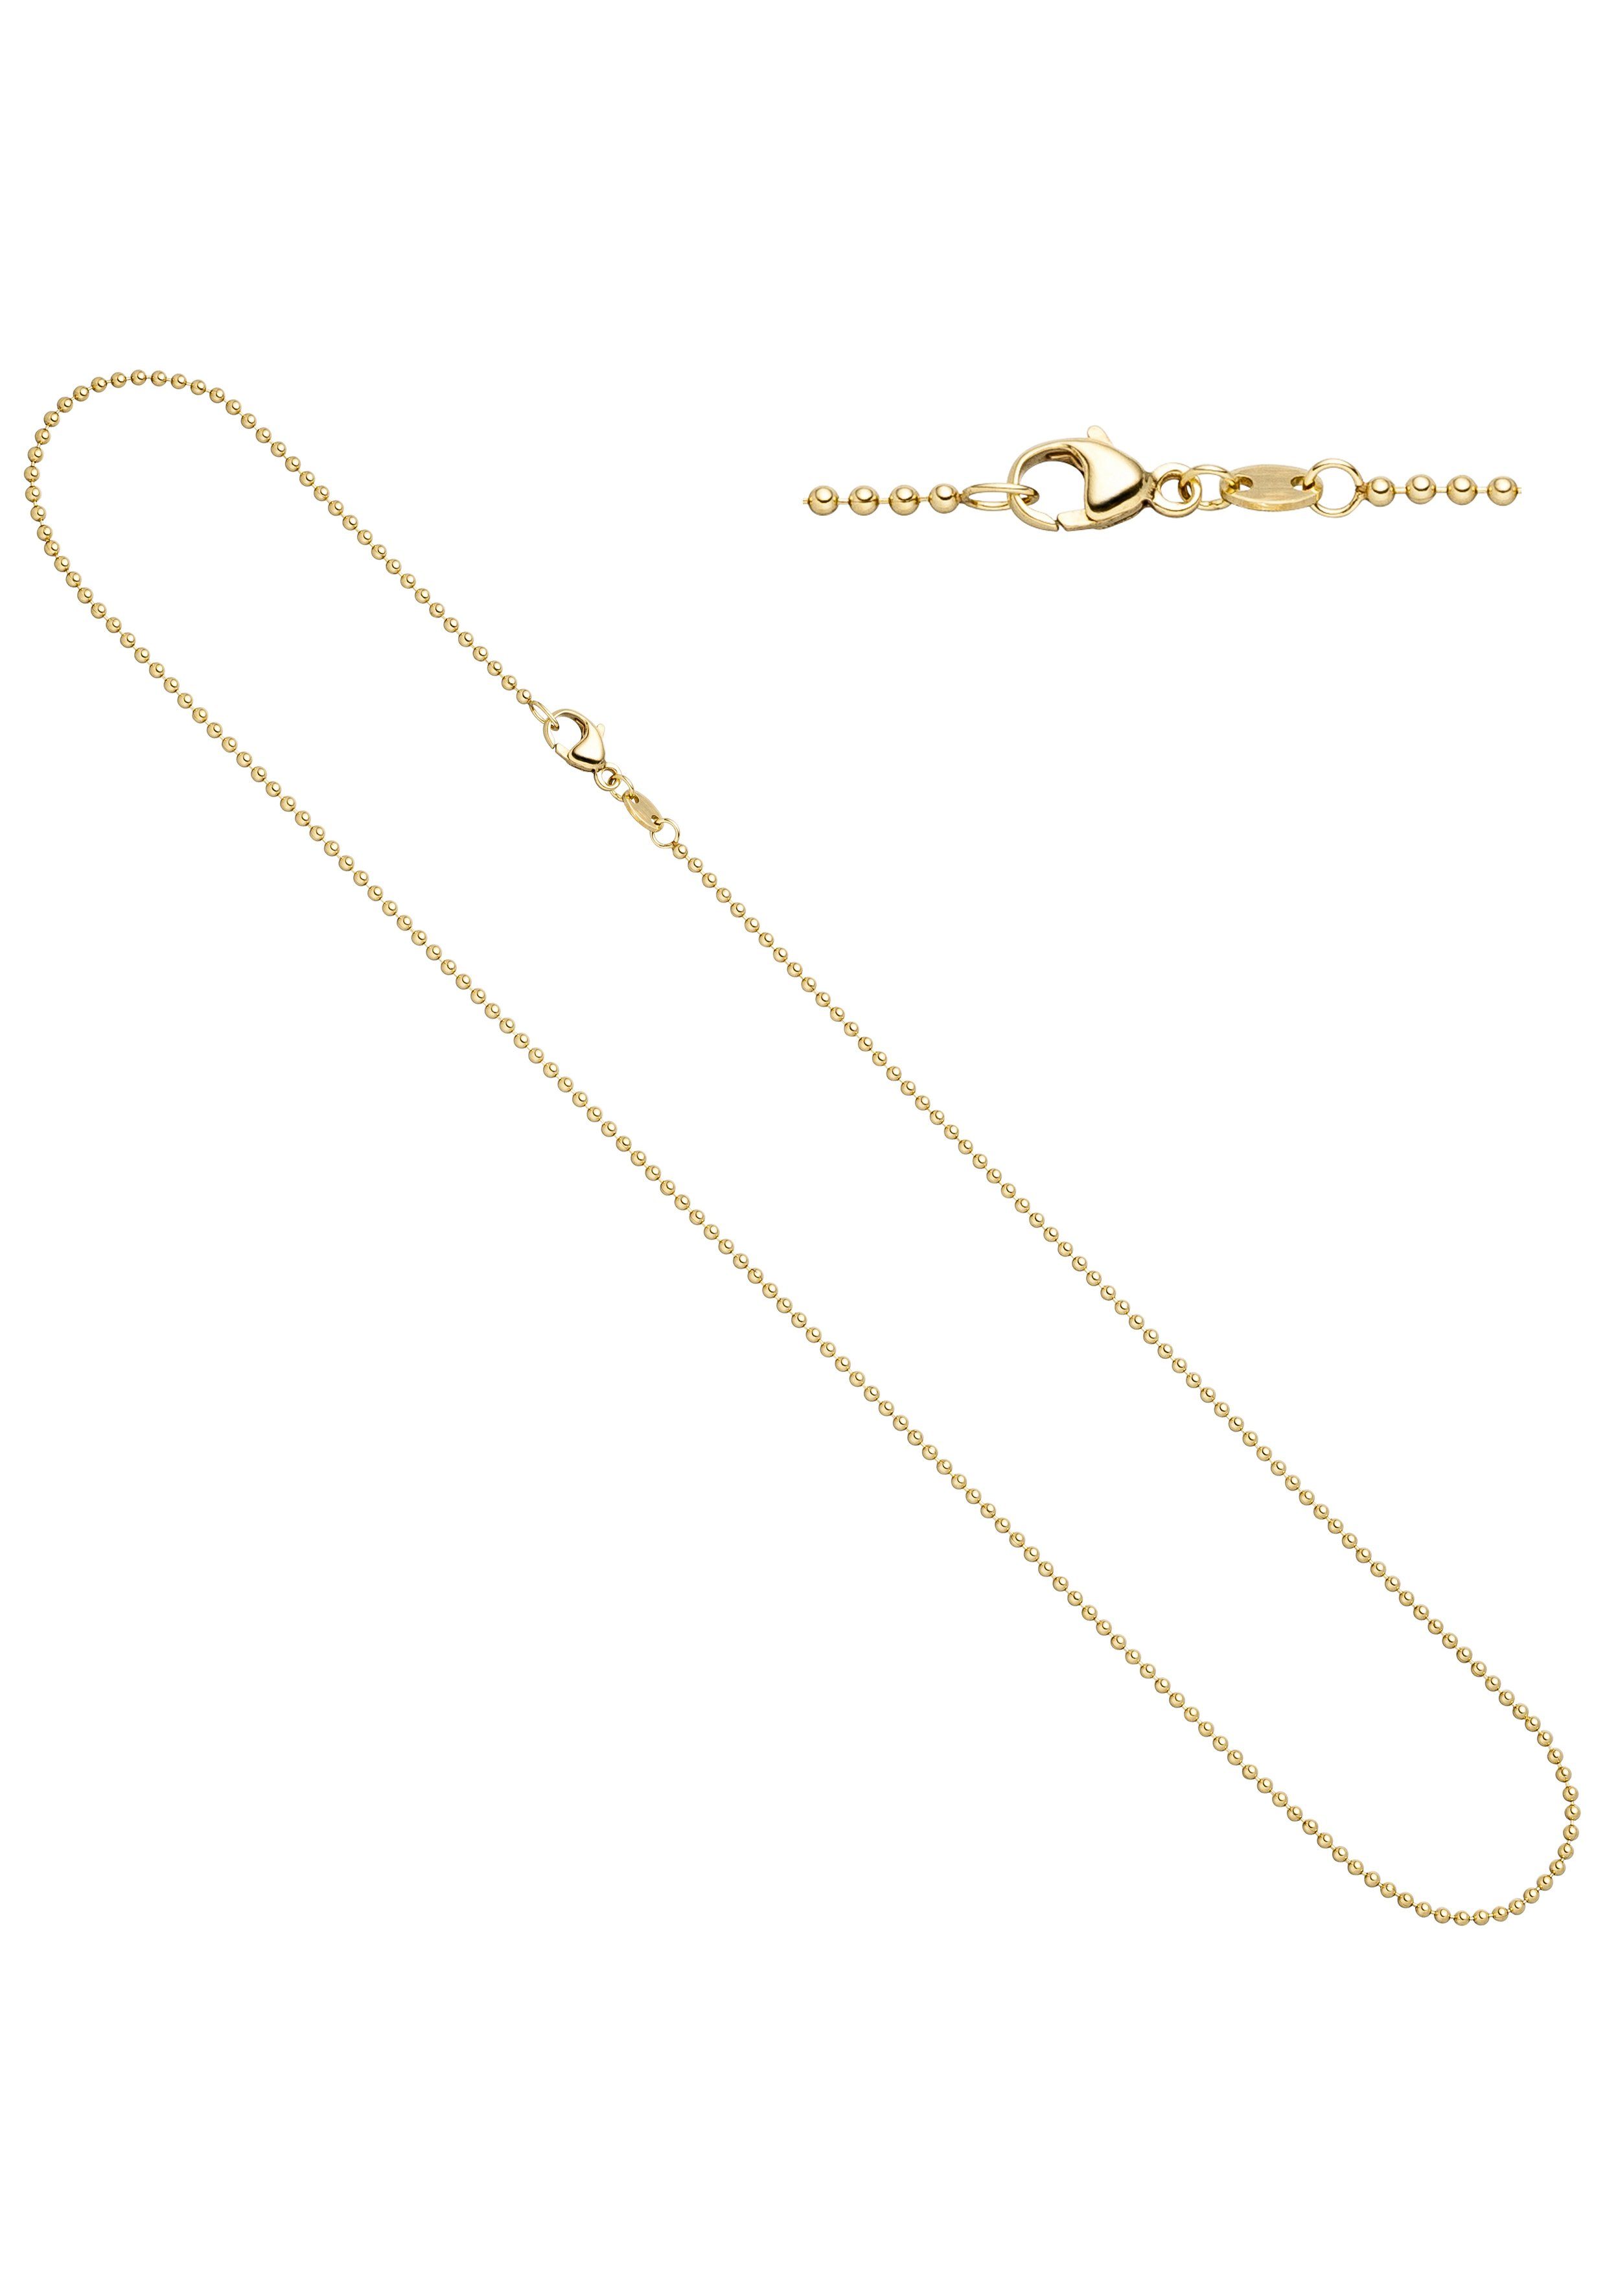 Kugelkette diamantiert 585 Gelbgold 14 Karat 45cm 1,0mm Echt Gold Halskette Neu